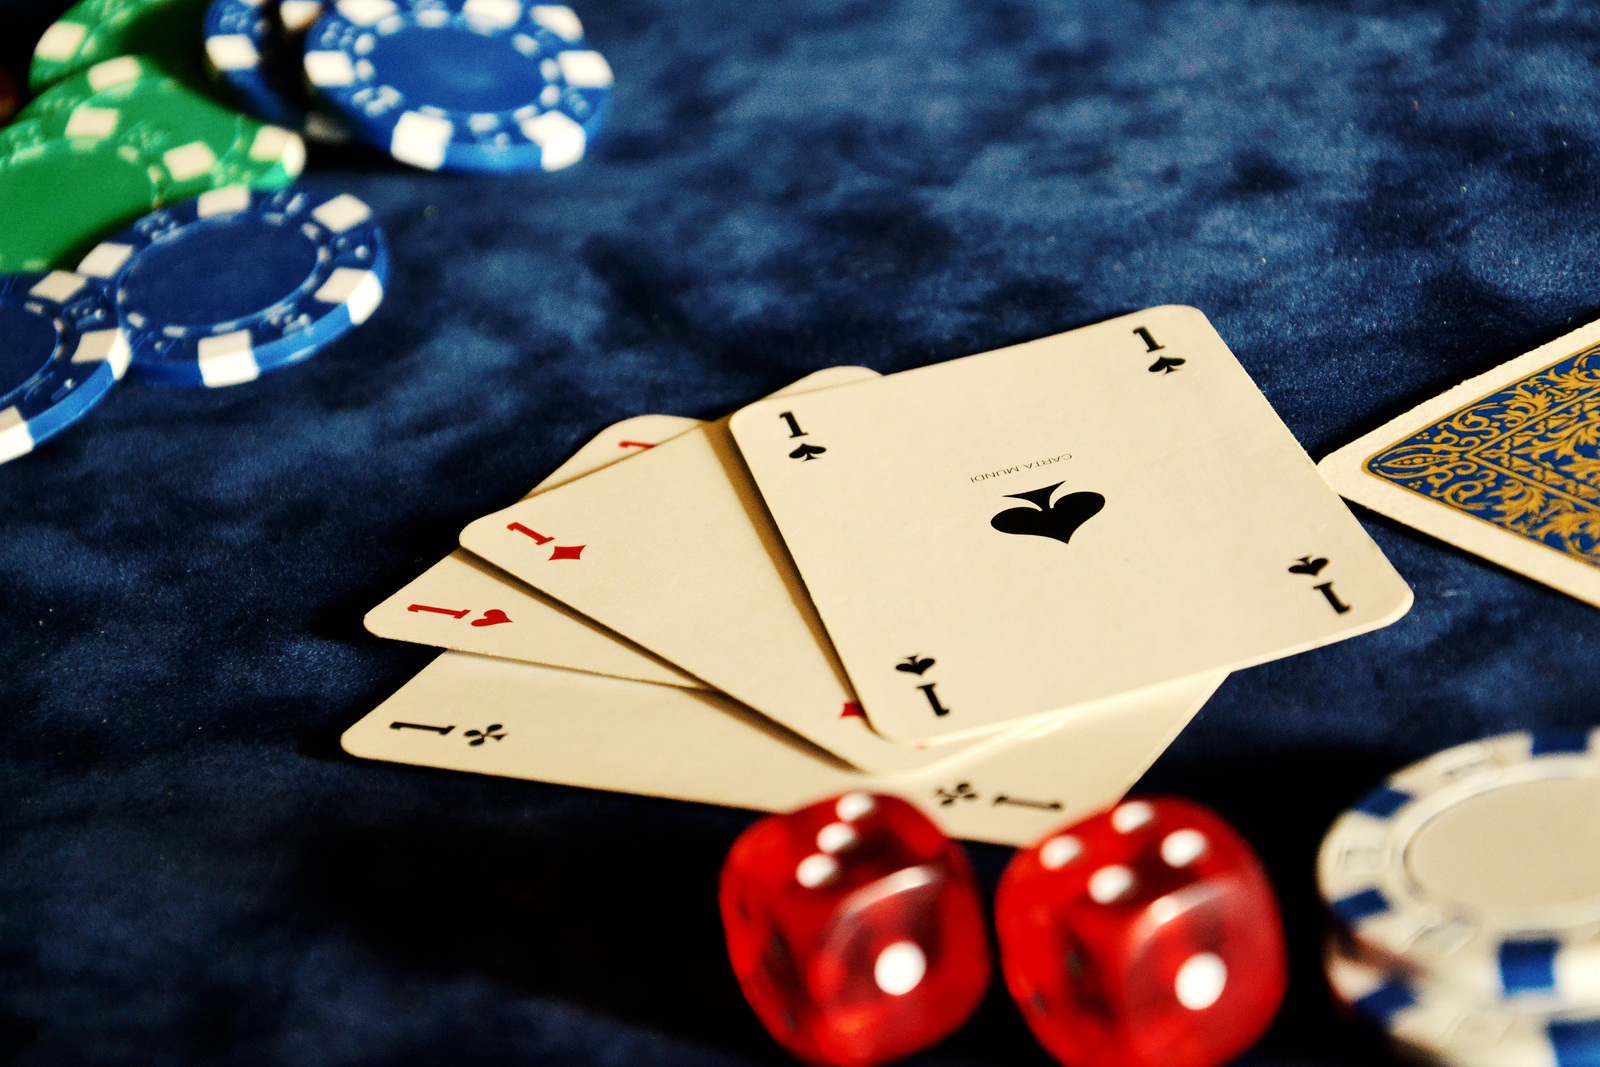 Risque d’addiction au jeu : les casinos